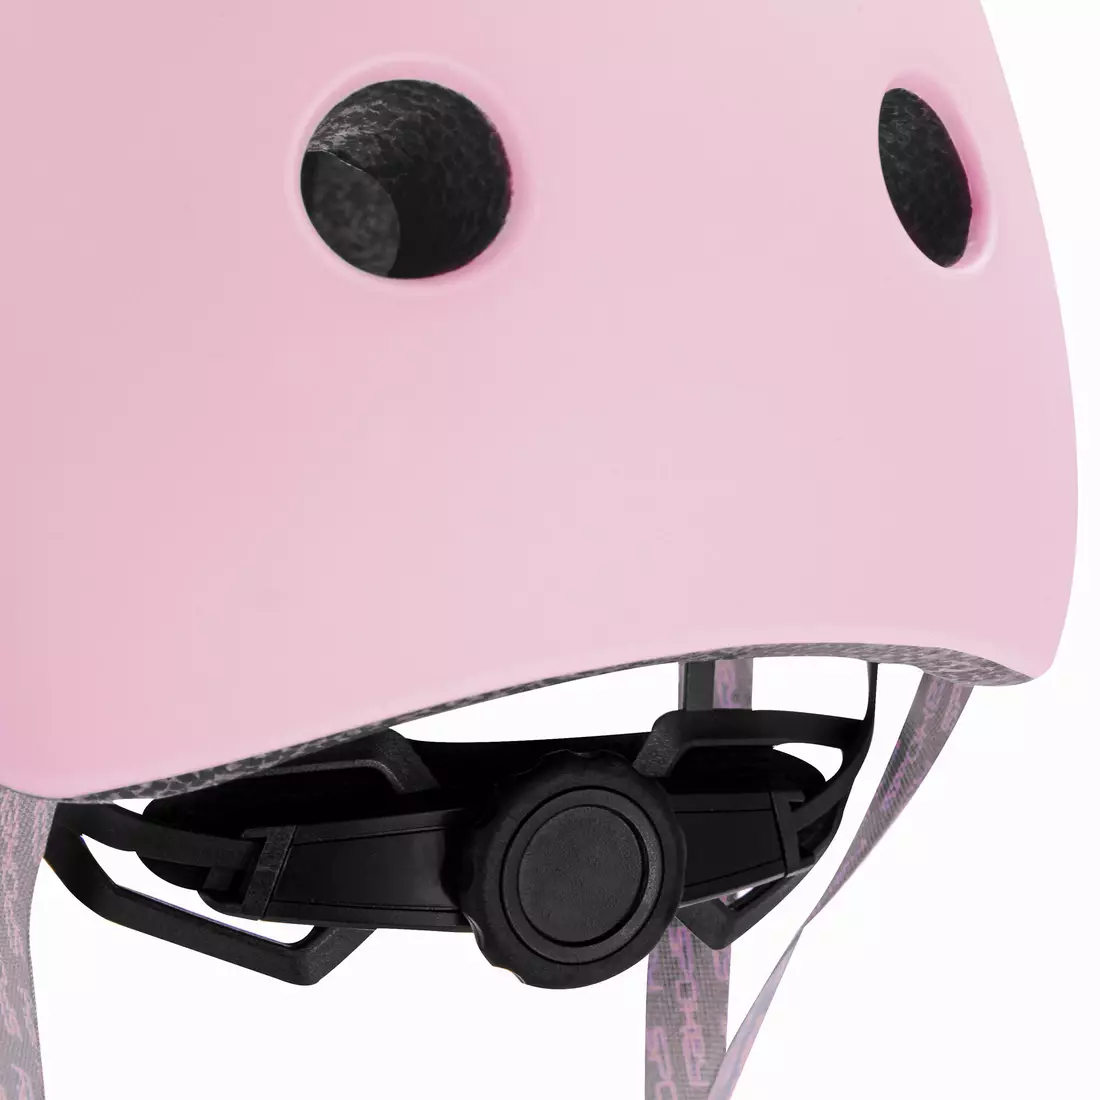 SPOKEY PUMPTRACK BMX kask rowerowy różowy